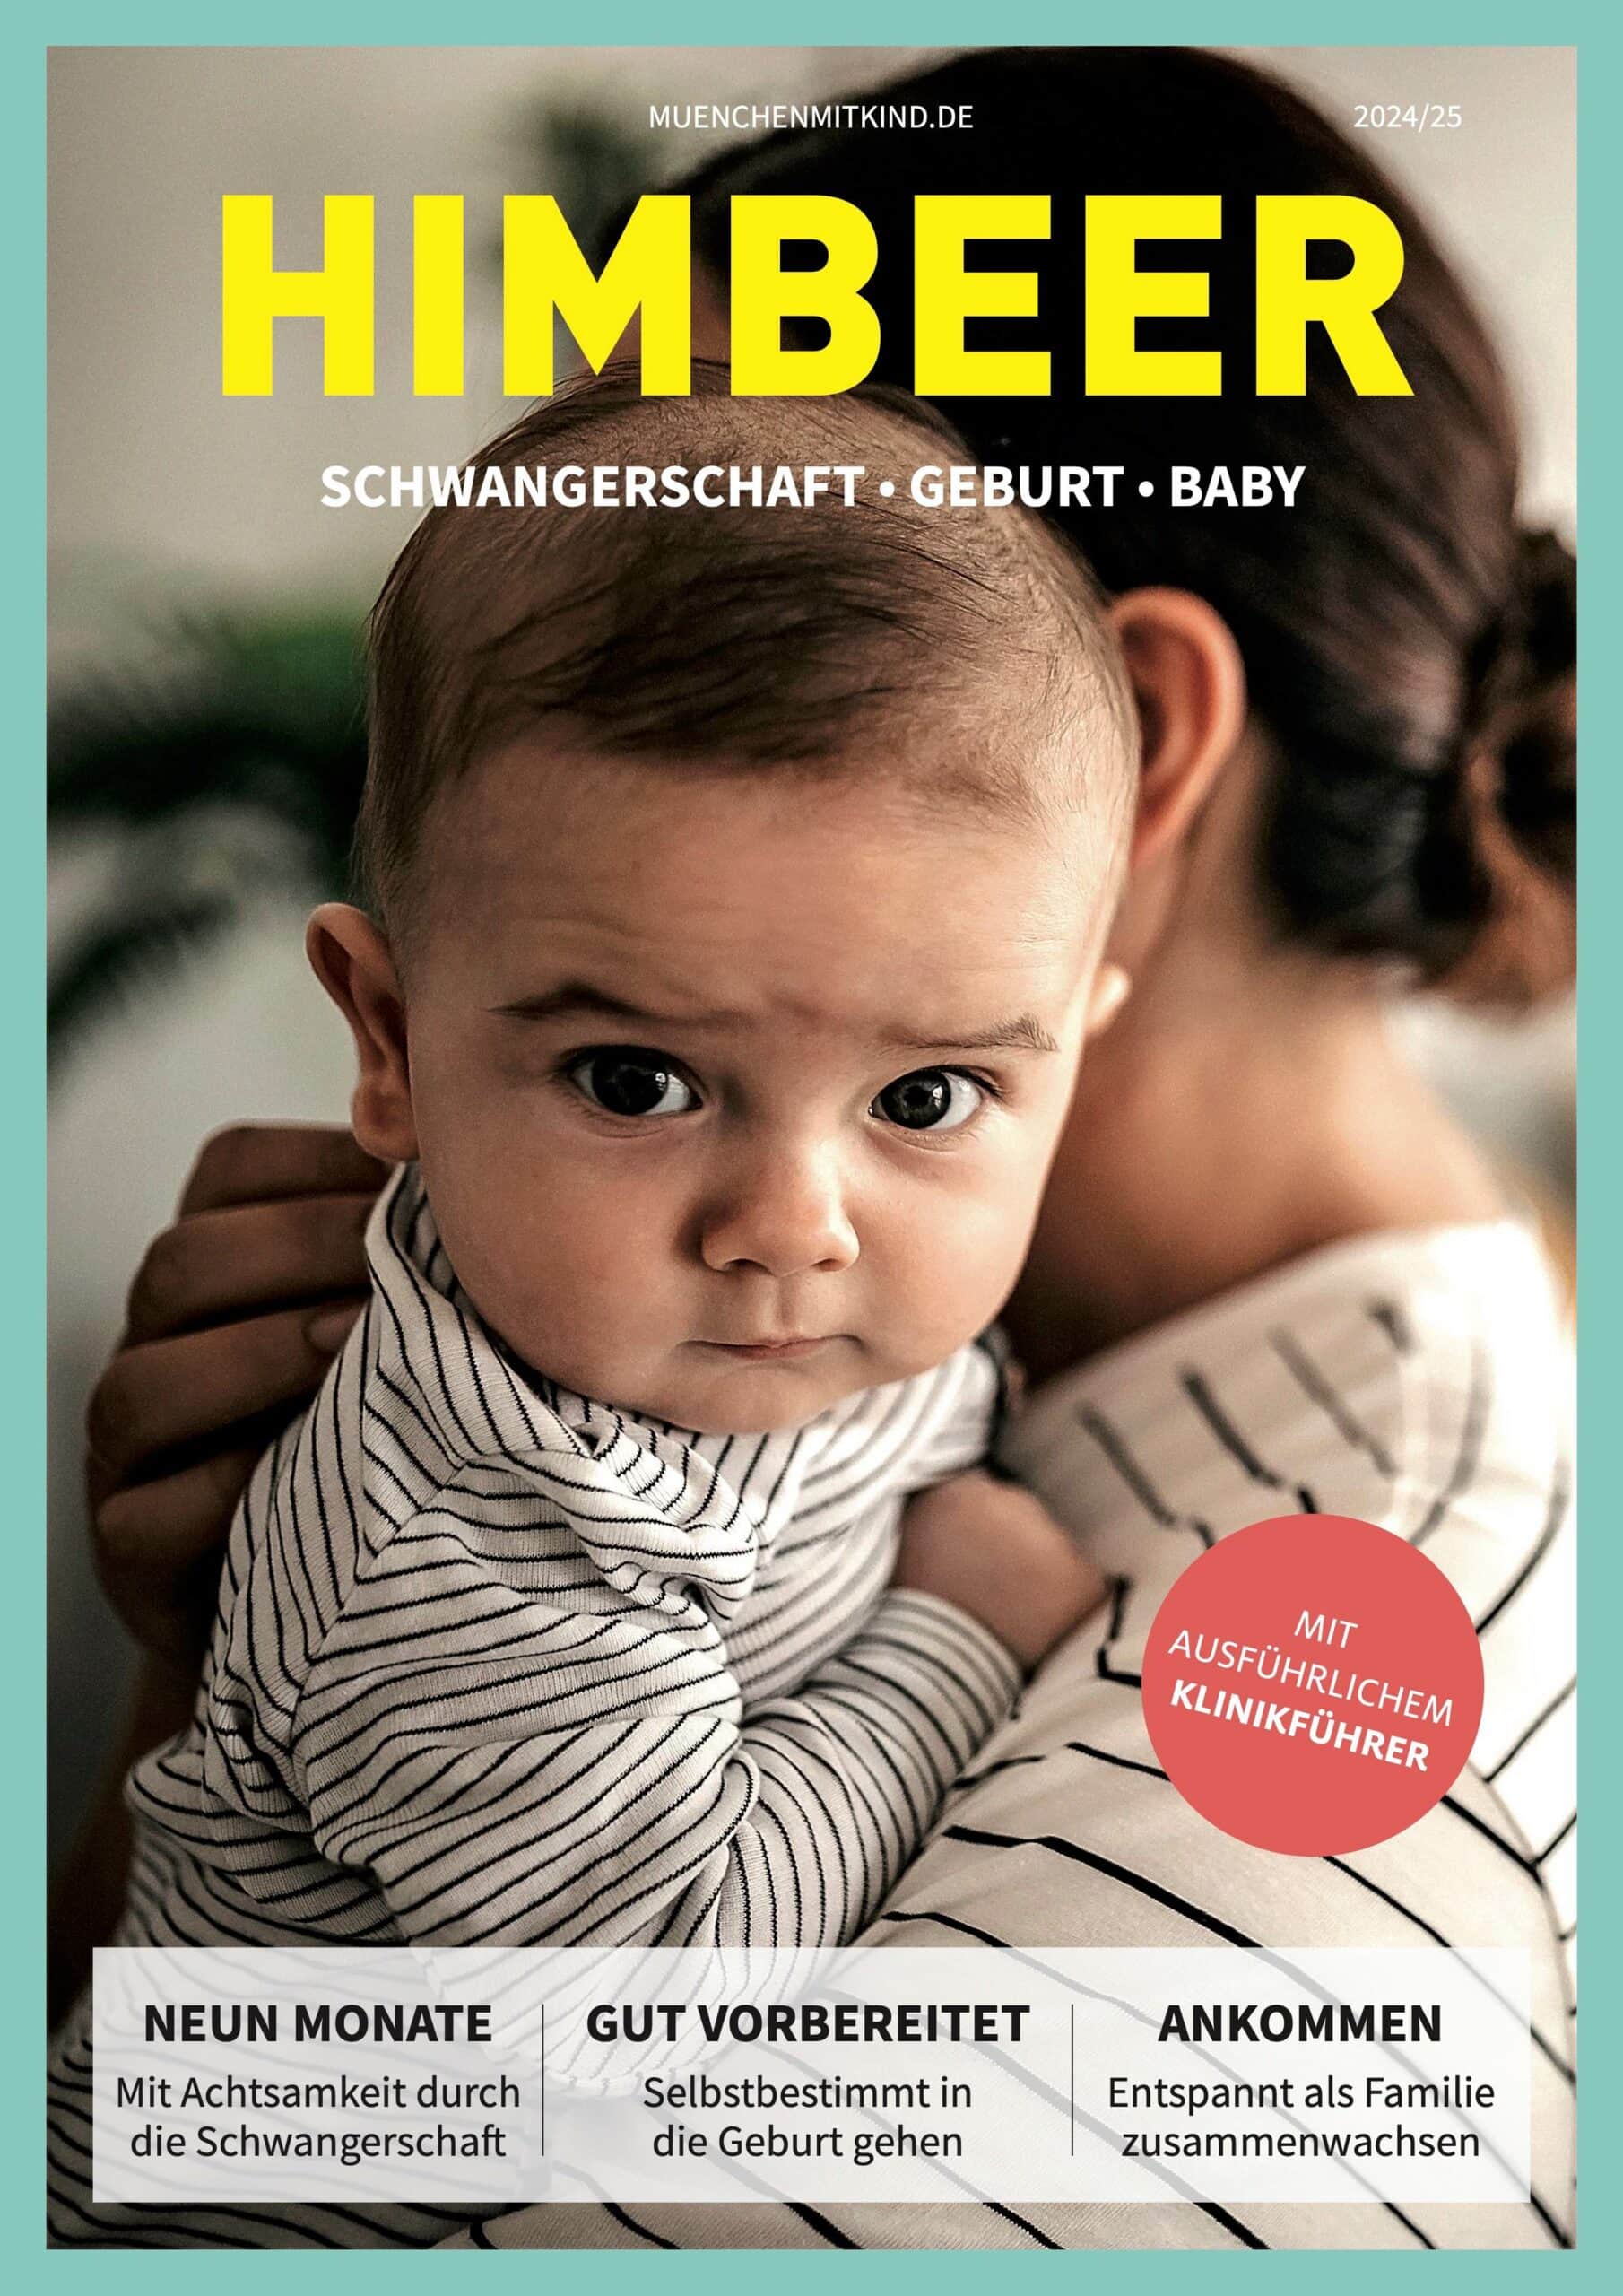 Edition HIMBEER Schwangerschaft-Geburt-Baby in München // HIMBEER